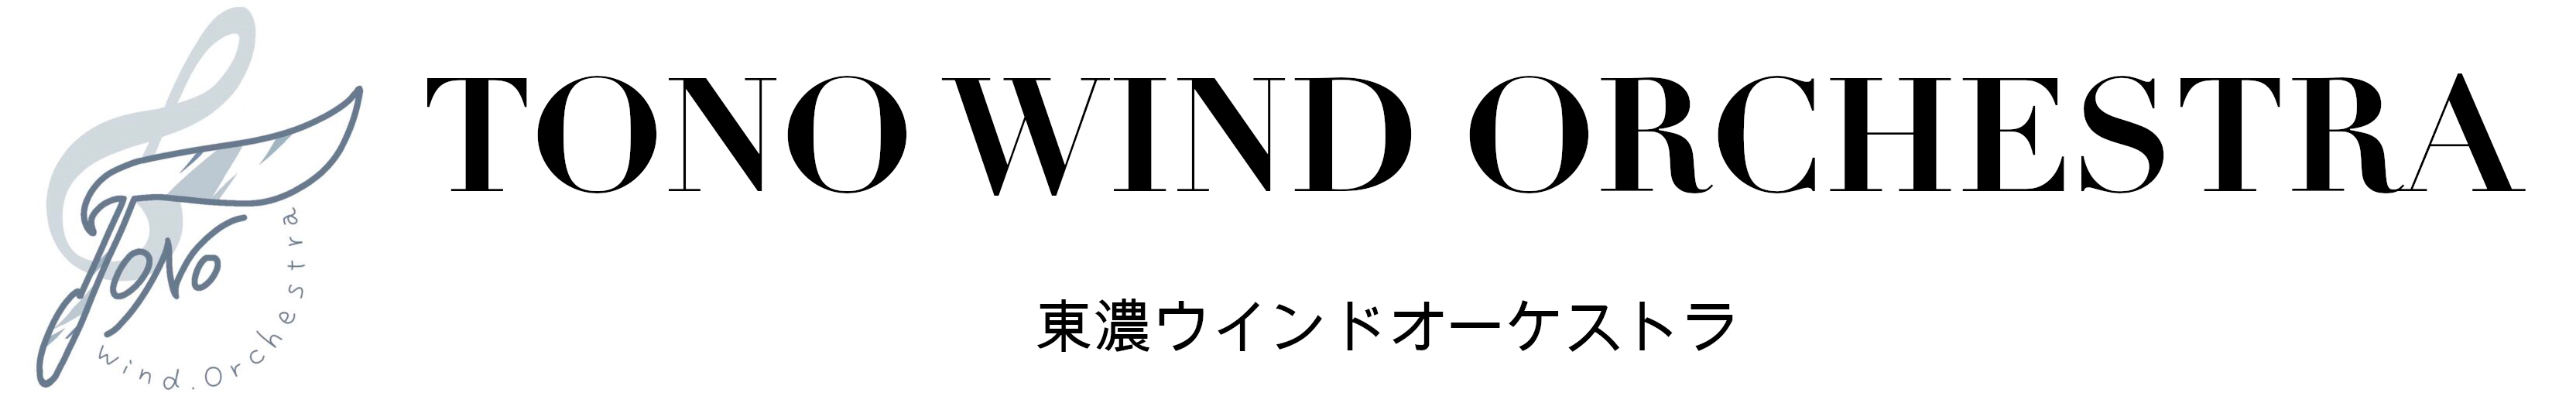 Tono Wind Orchestra